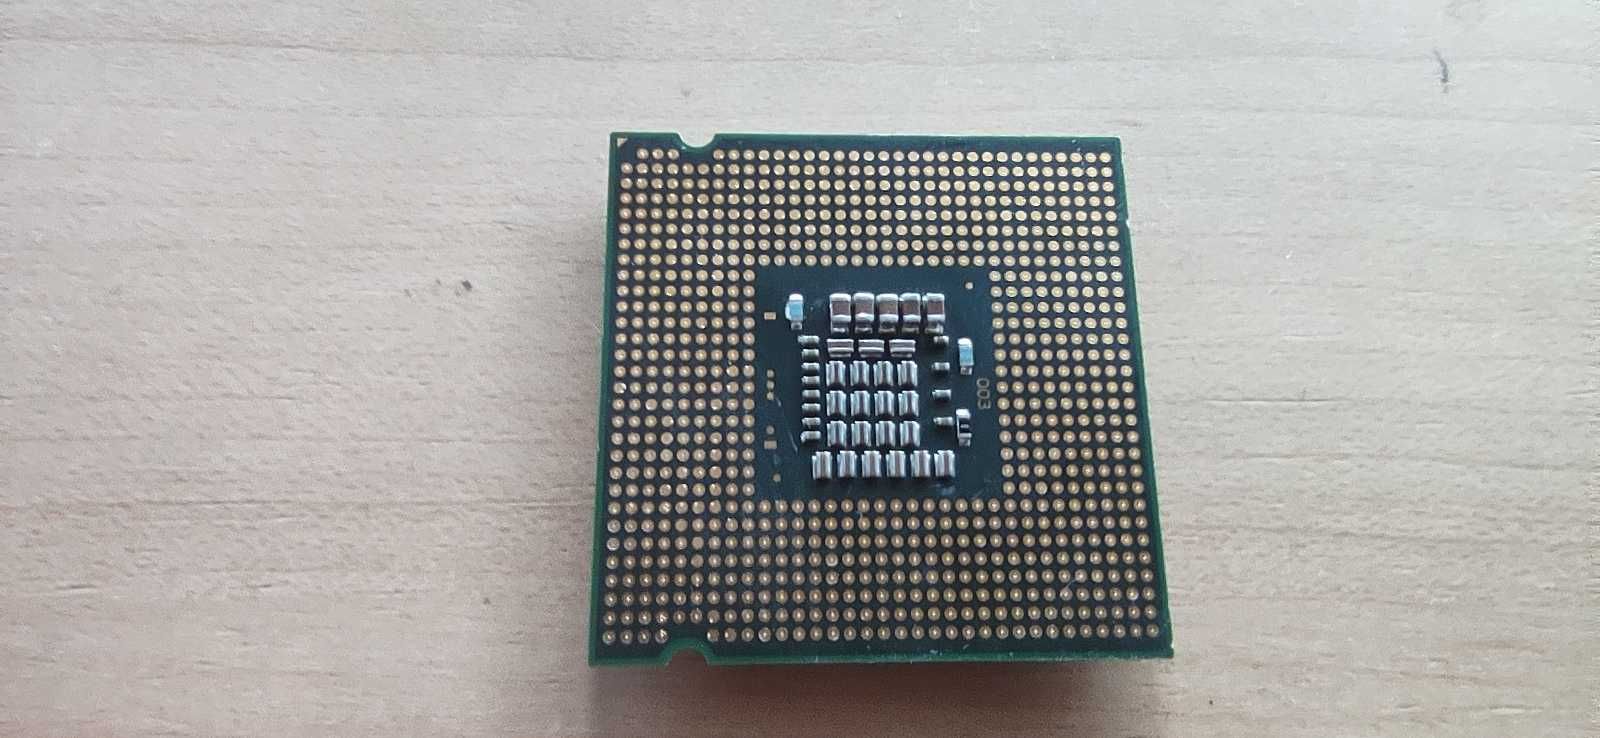 Процессор Intel Core 2 Duo E8300 2.83 GHz 6 MB Cache  s. 775